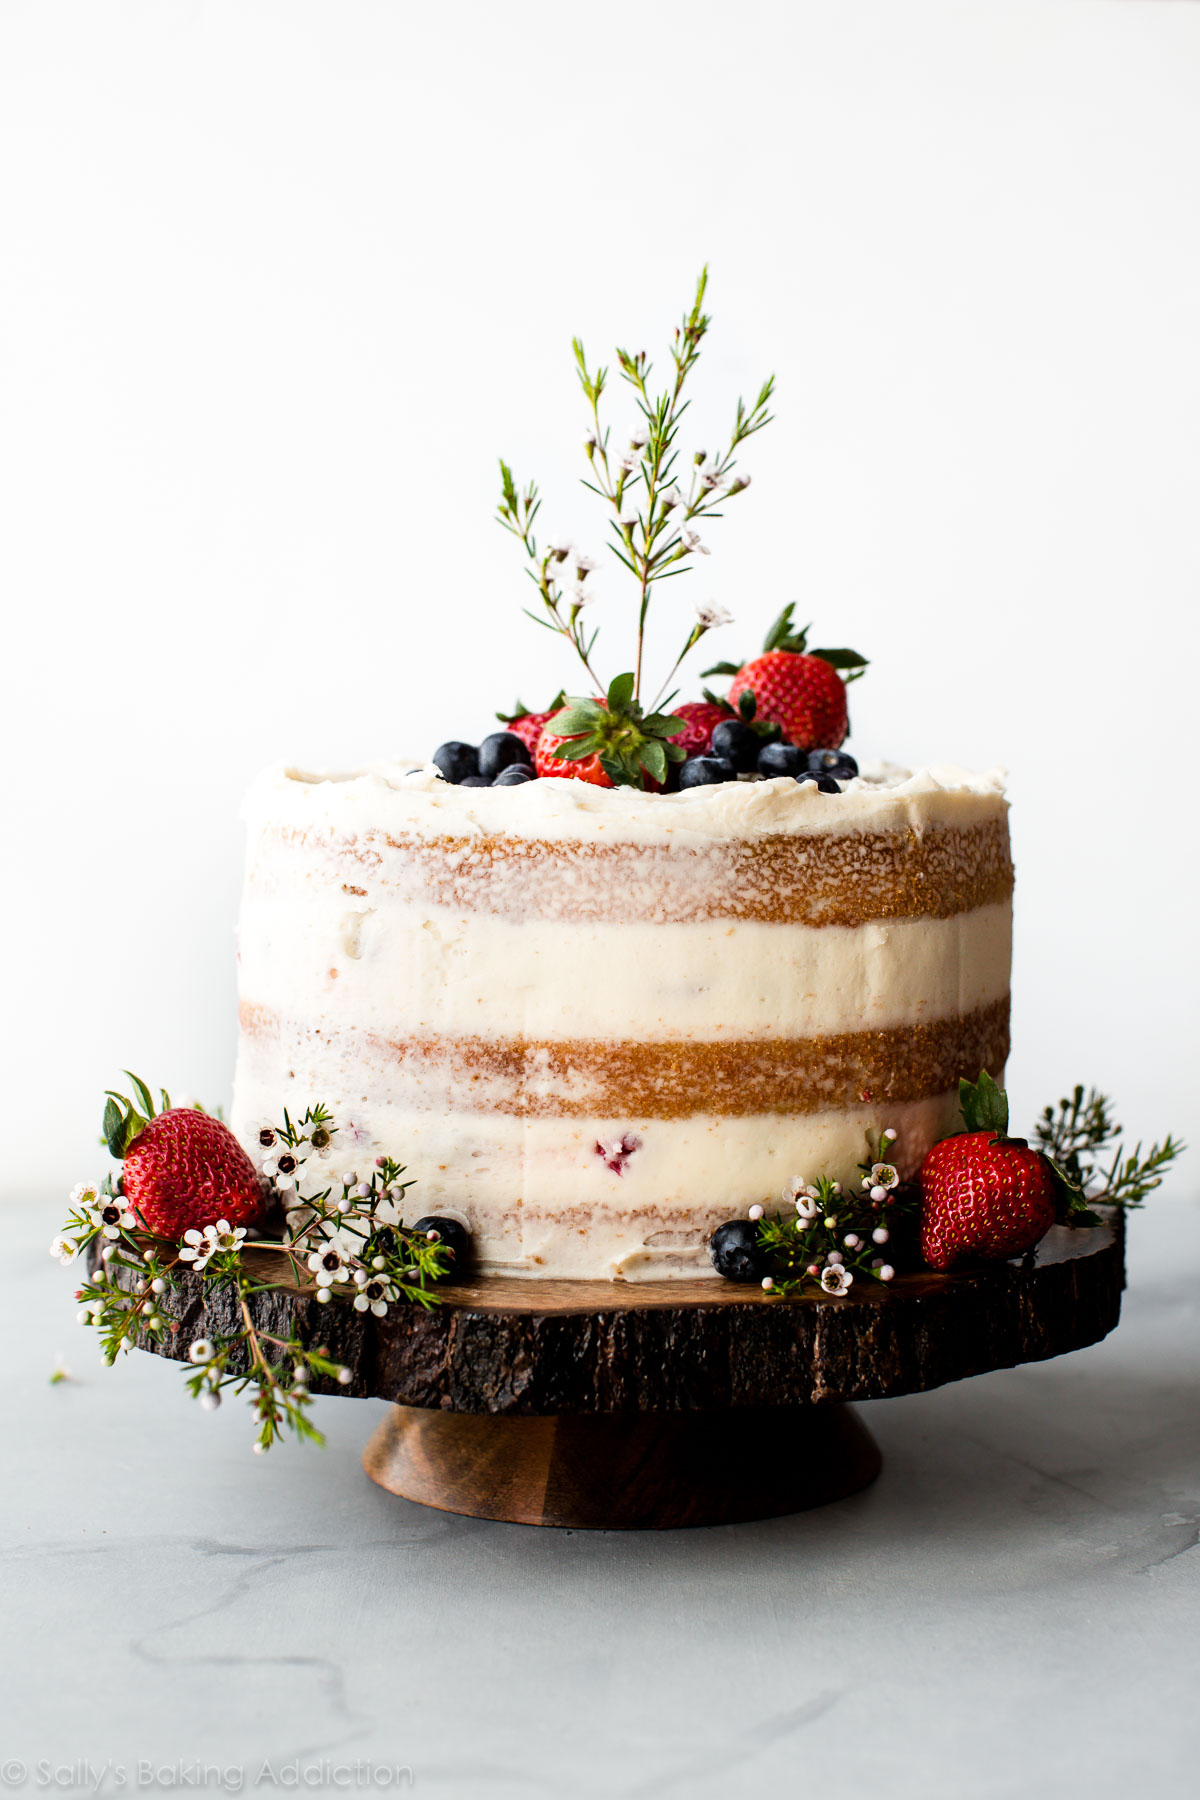 Comment faire un beau gâteau nu avec des baies fraîches, un gâteau à la vanille et une crème au beurre à la vanille. Gâteau de mariage fait maison sur sallysbakingaddiction.com